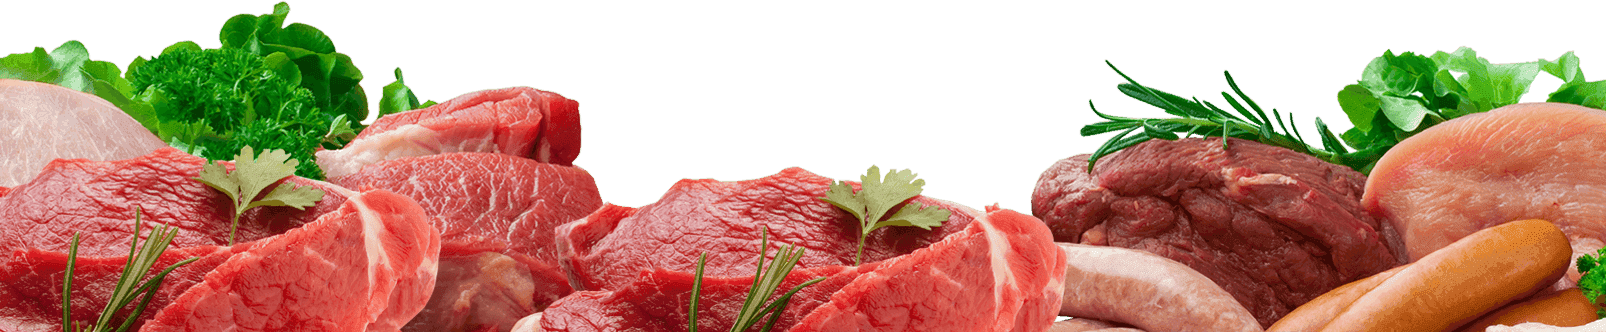 Fresh Meat Online